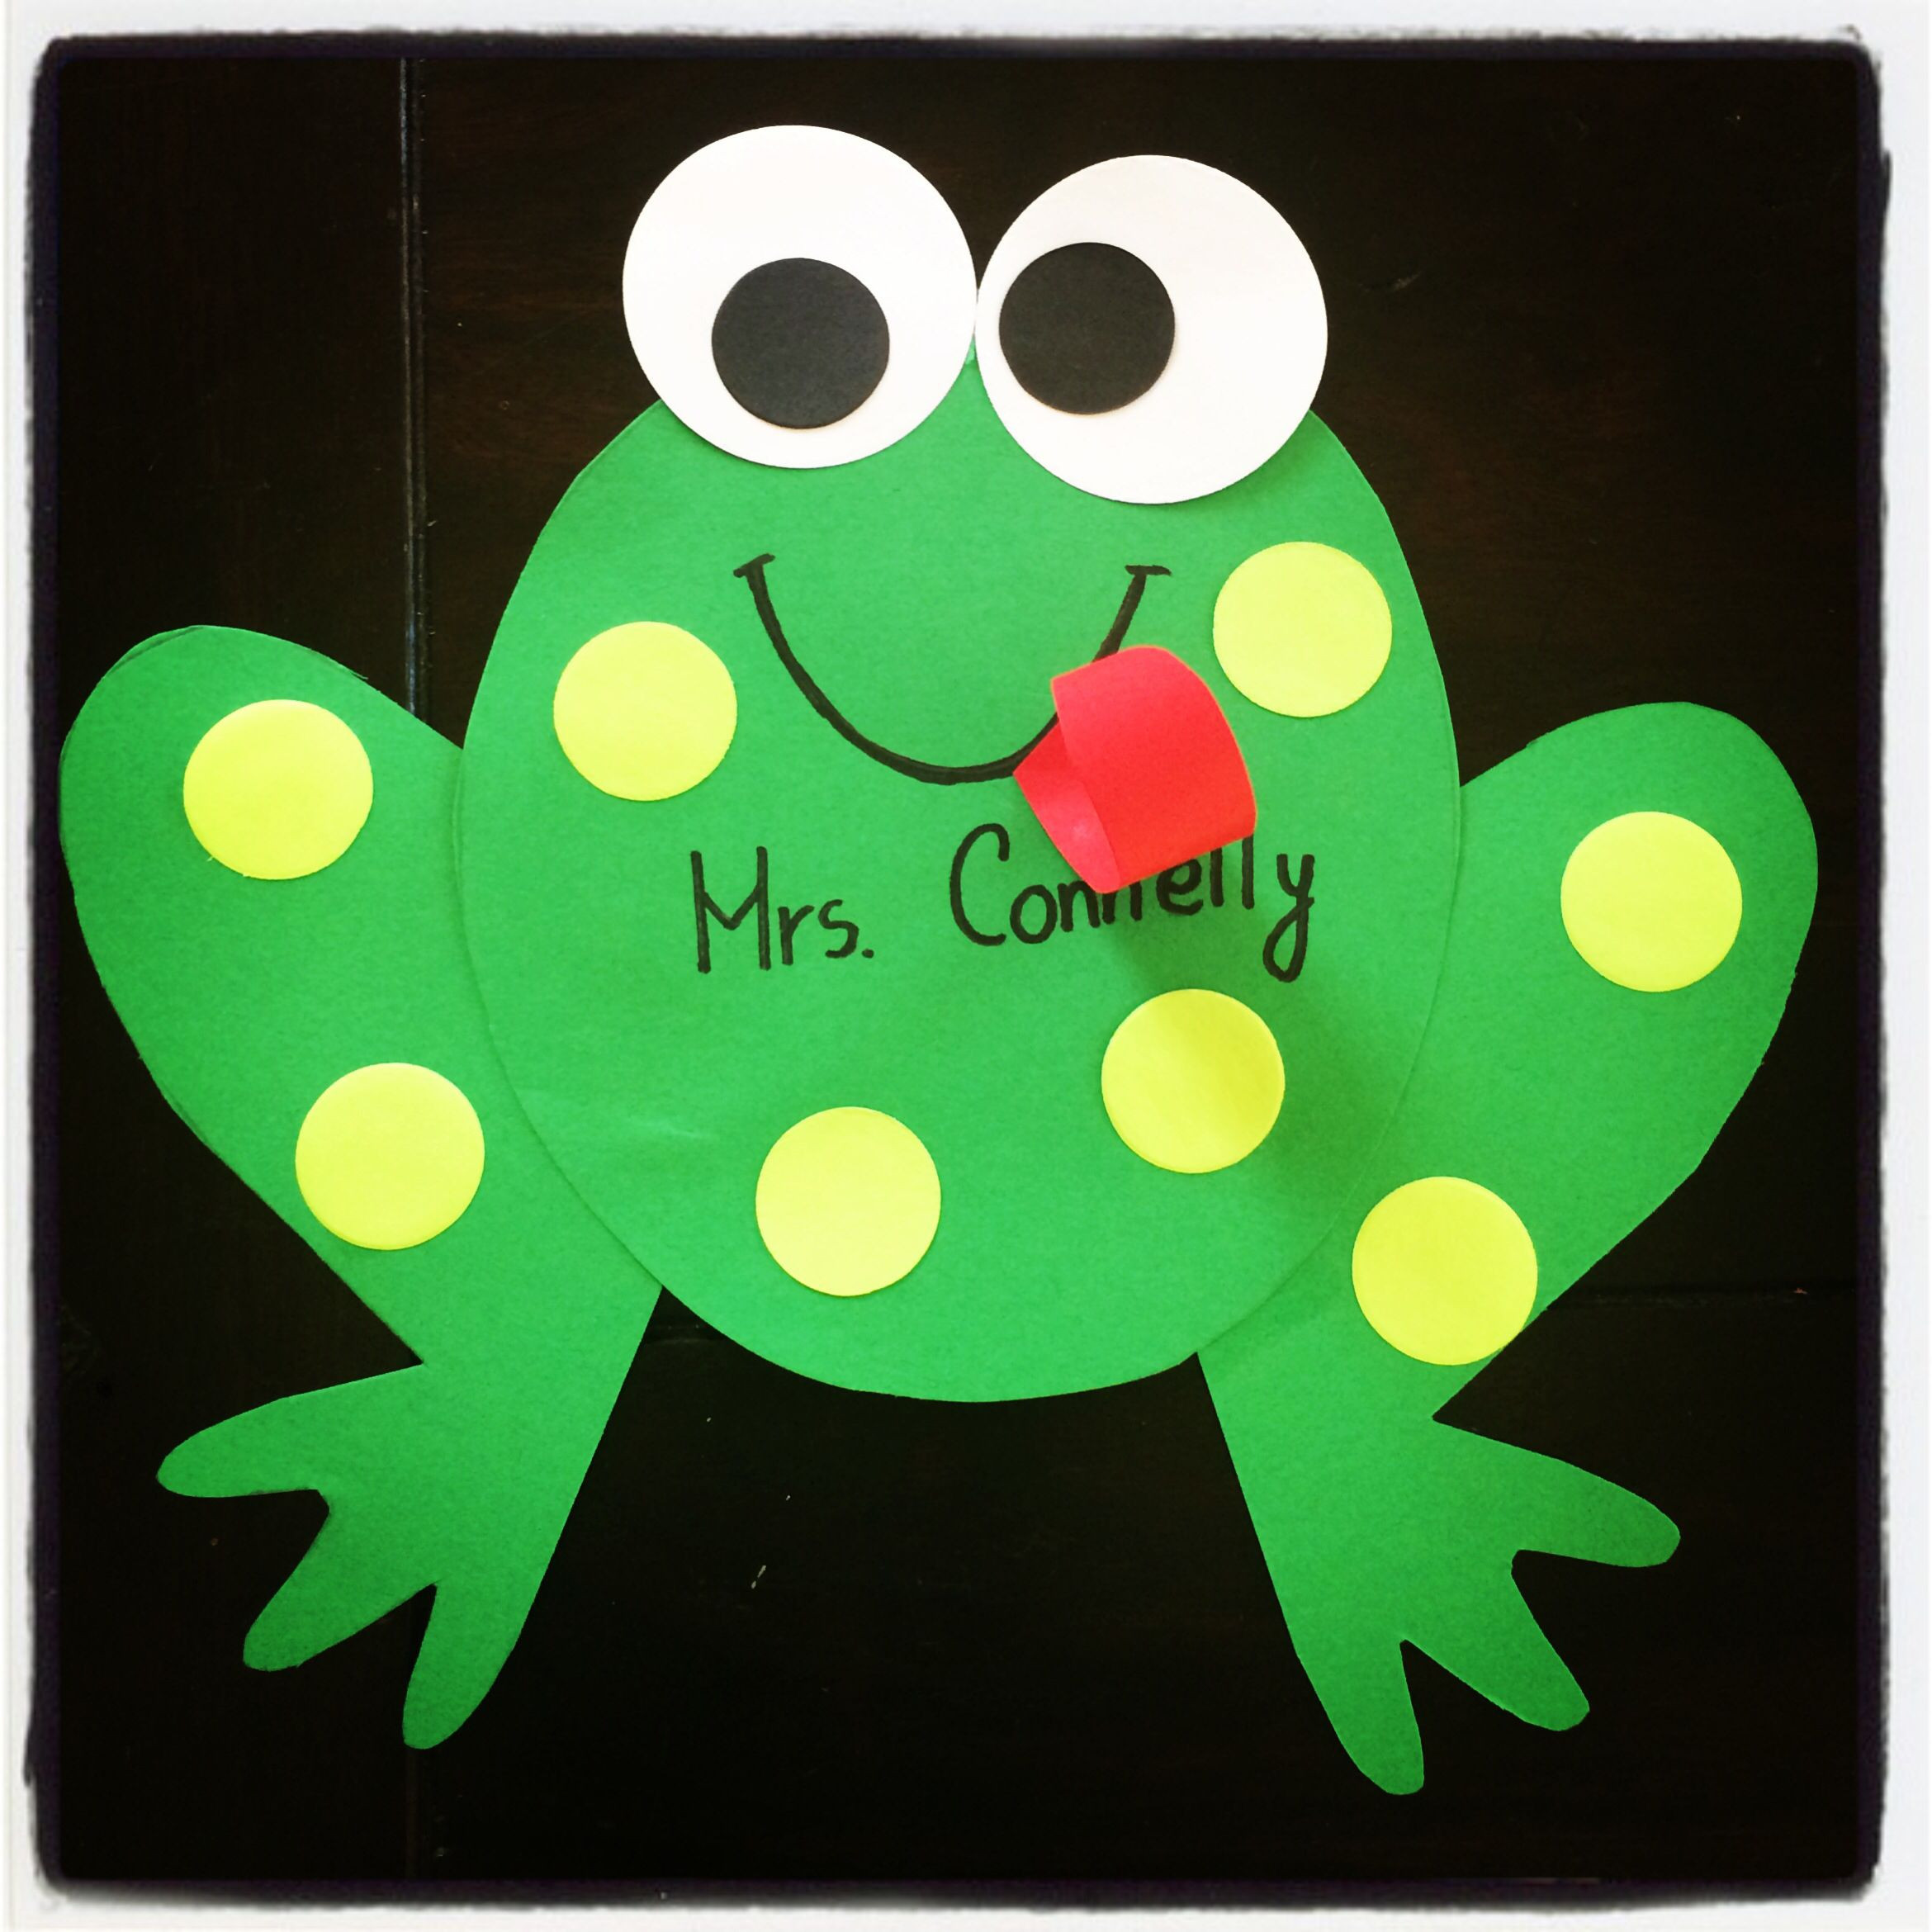 Frog Art Projects For Preschoolers
 Kindergarten Frog craft hop into spring